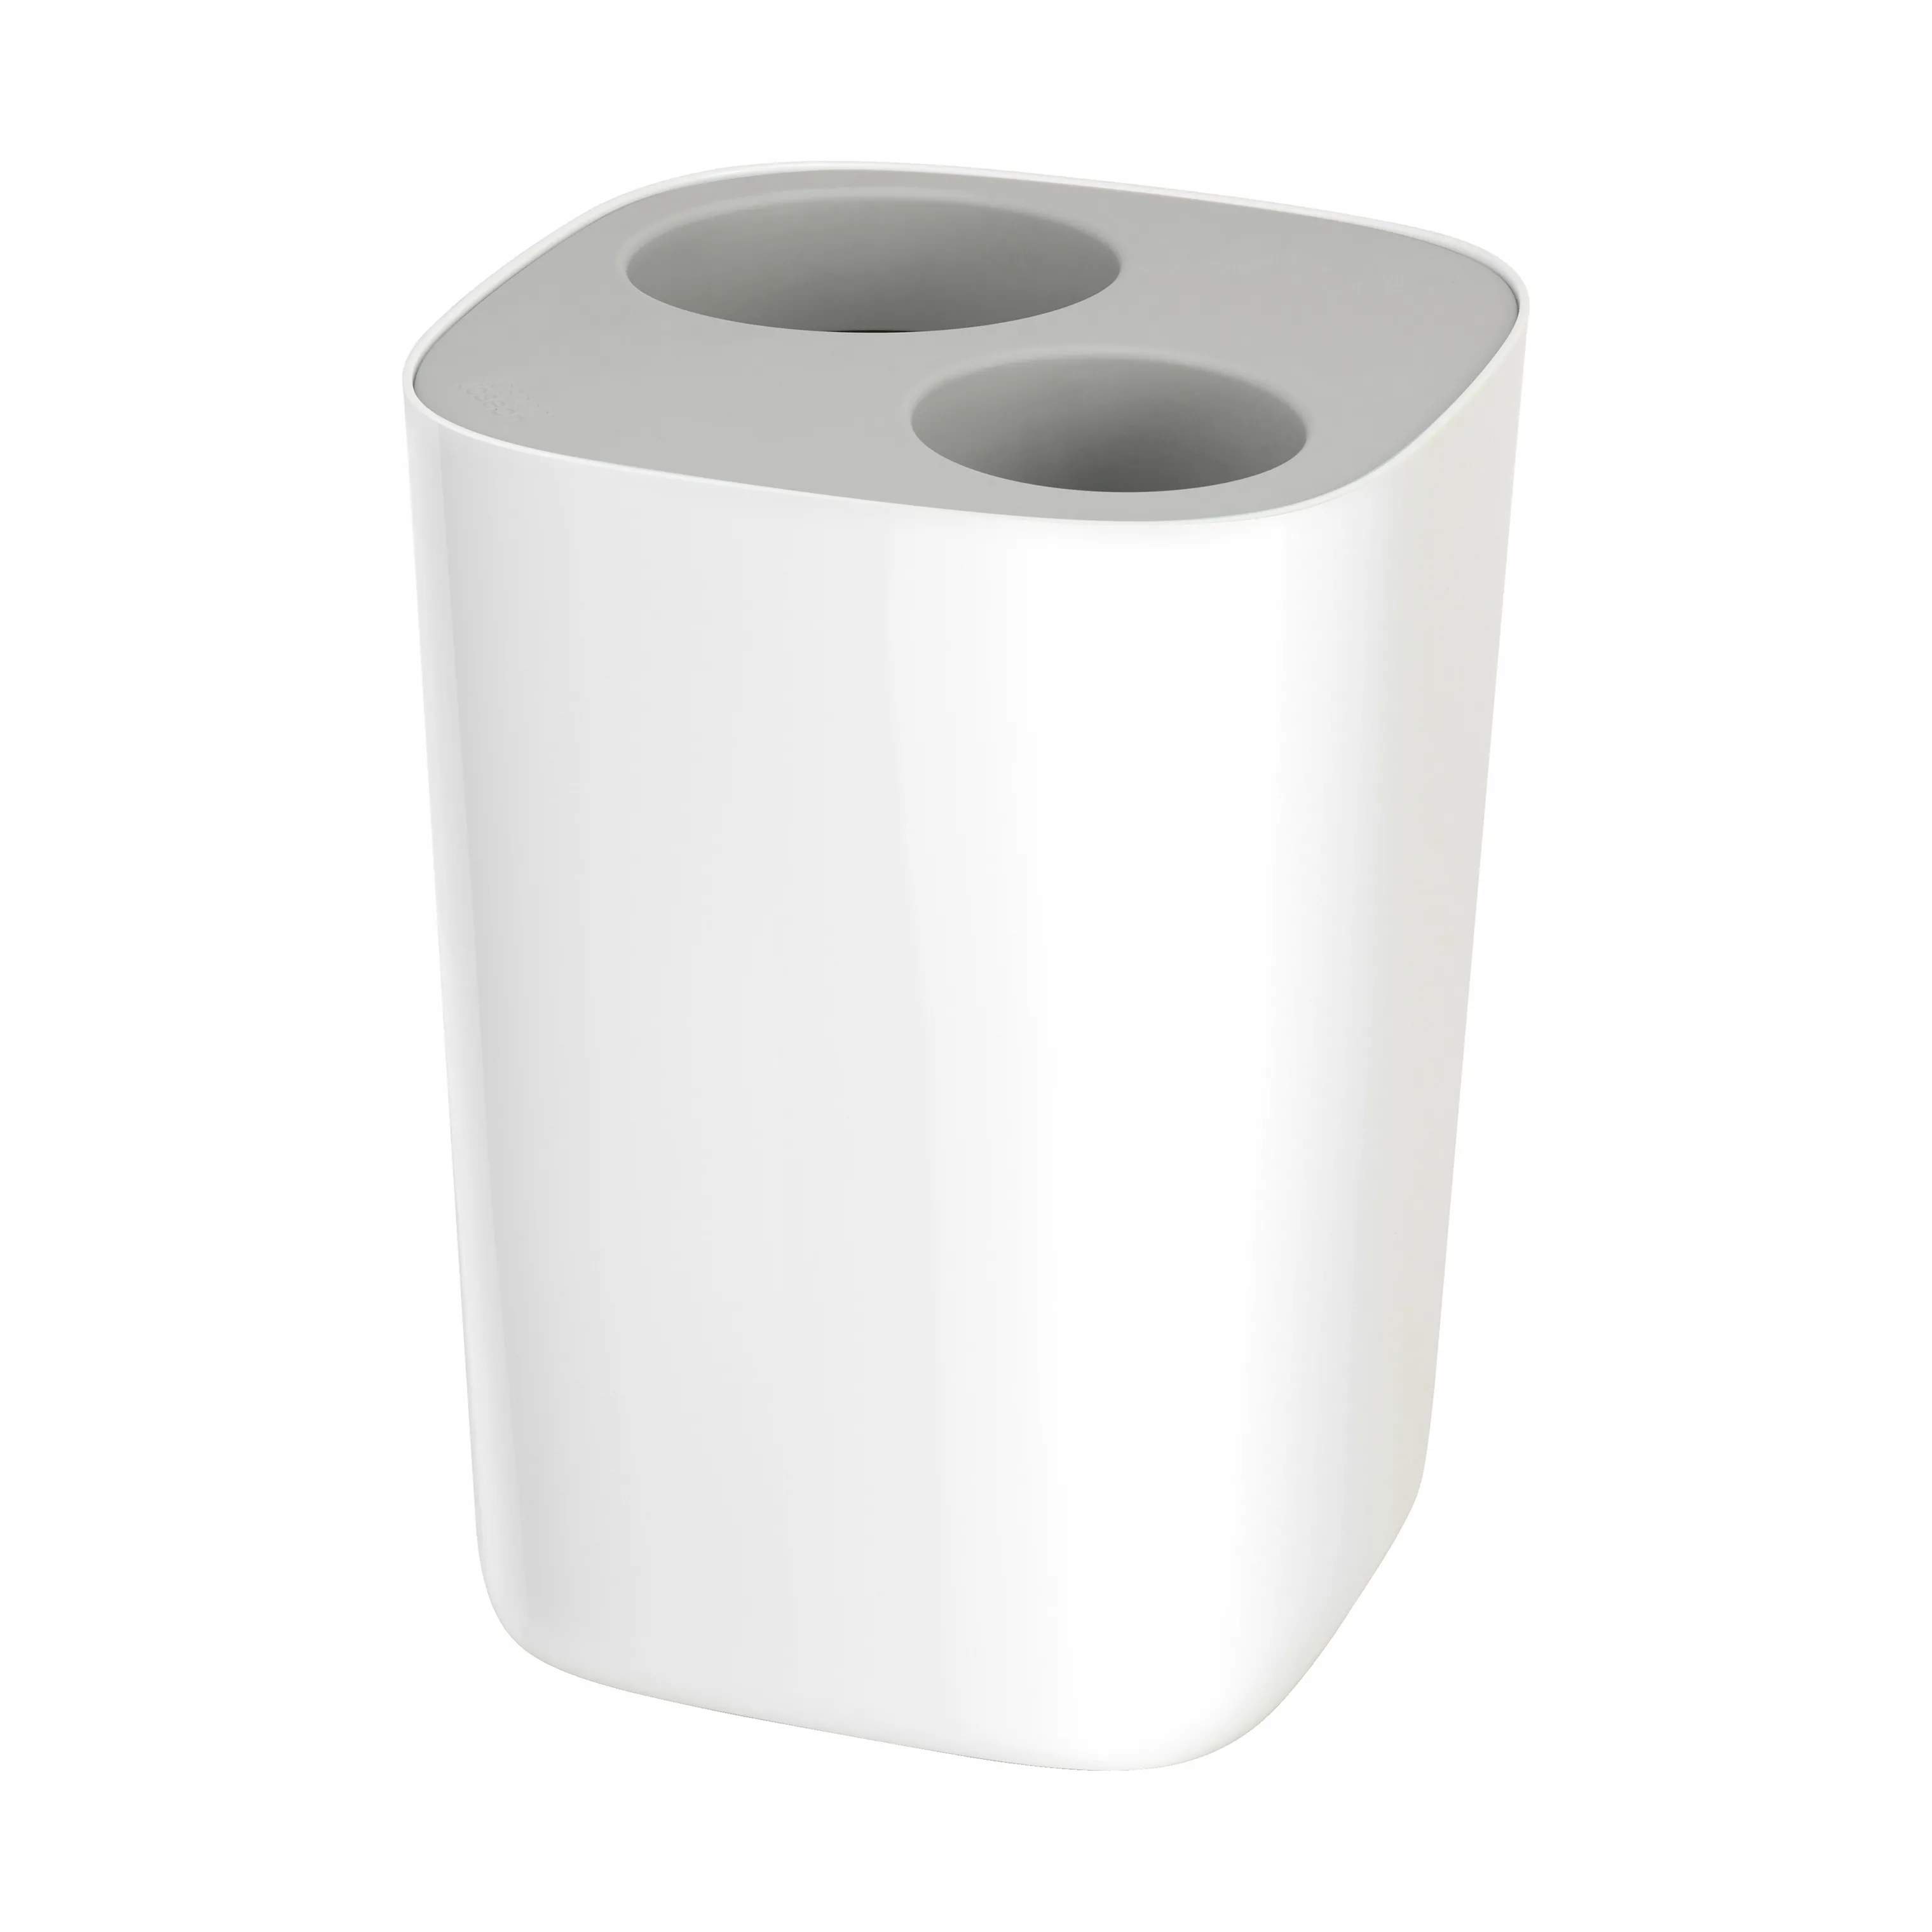 Split Toiletspand, grey/white, large